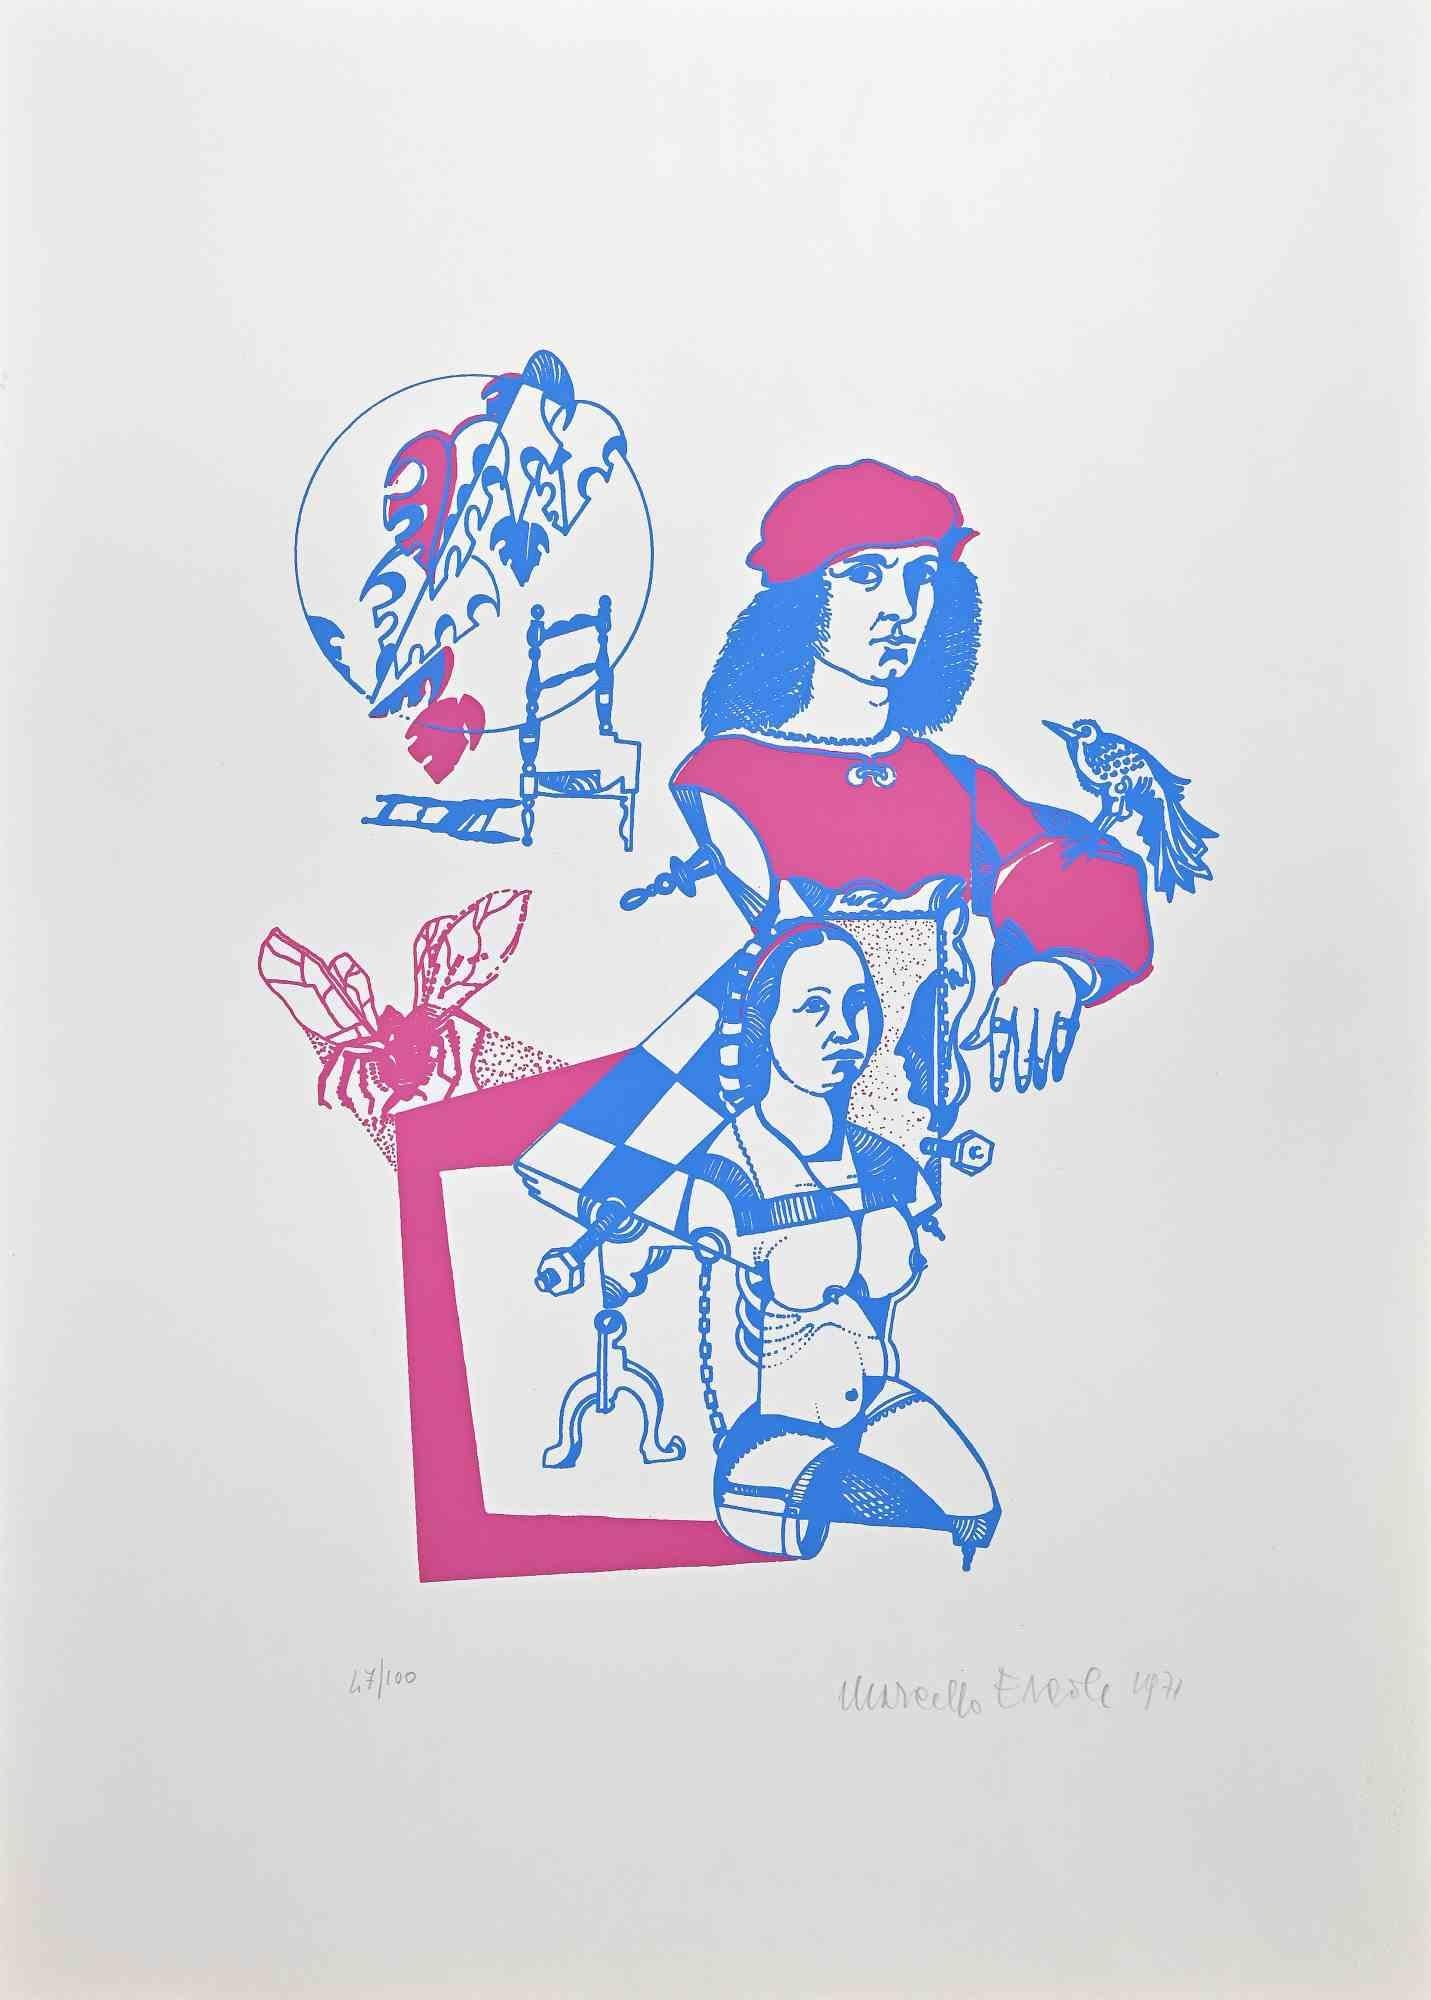 Figuras es una maravillosa litografía coloreada sobre papel, realizada en 1971 por el artista italiano Marcello Ercole.

Firmado a mano y numerado a lápiz en el margen inferior. Edición de 100 copias .

Esta obra de arte contemporánea, que